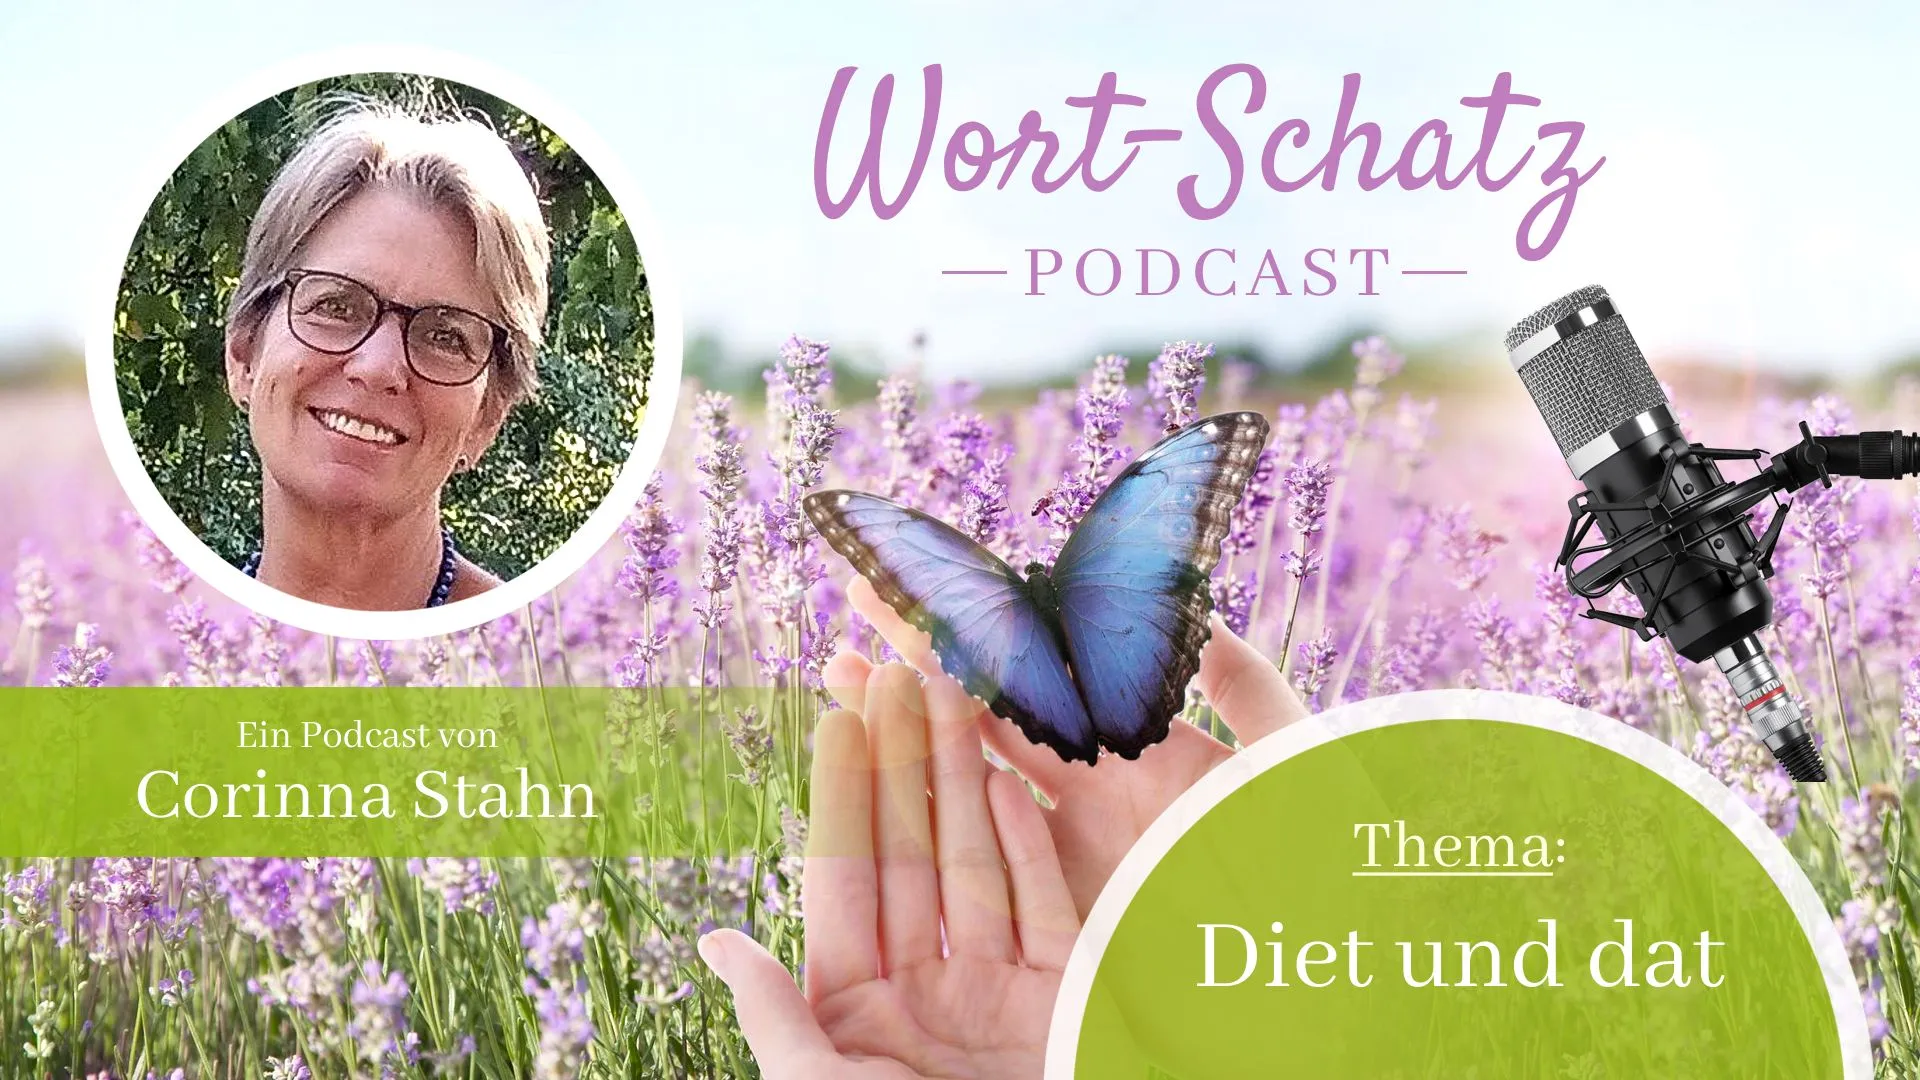 Podcast zum Thema diet und dat